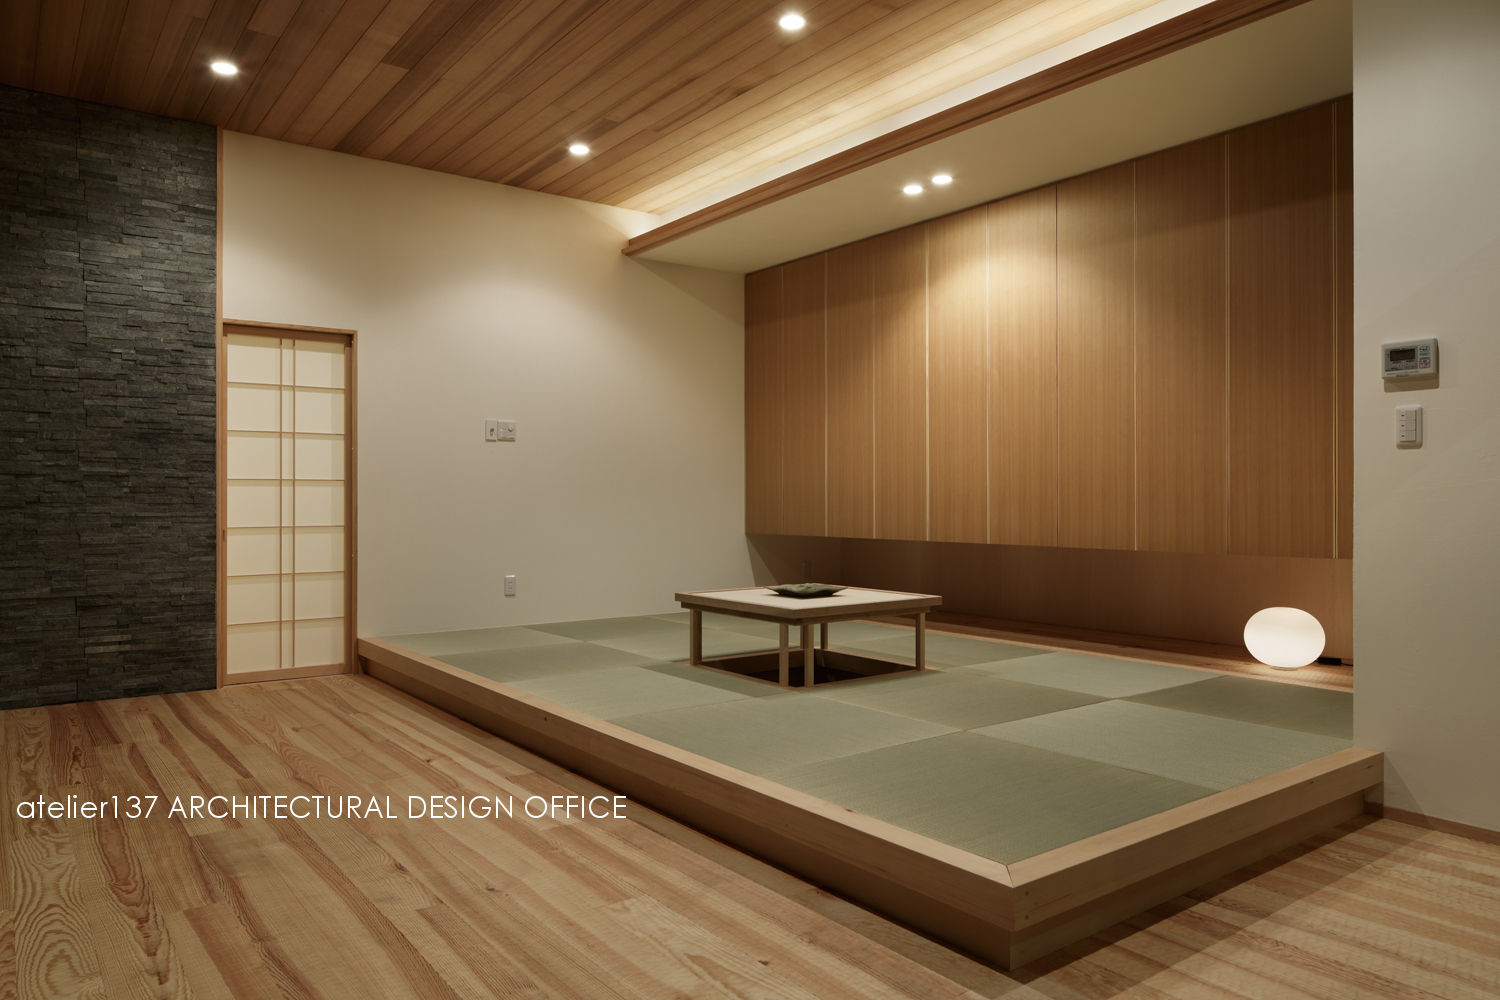 040軽井沢Cさんの家（増築）, atelier137 ARCHITECTURAL DESIGN OFFICE atelier137 ARCHITECTURAL DESIGN OFFICE ห้องนั่งเล่น